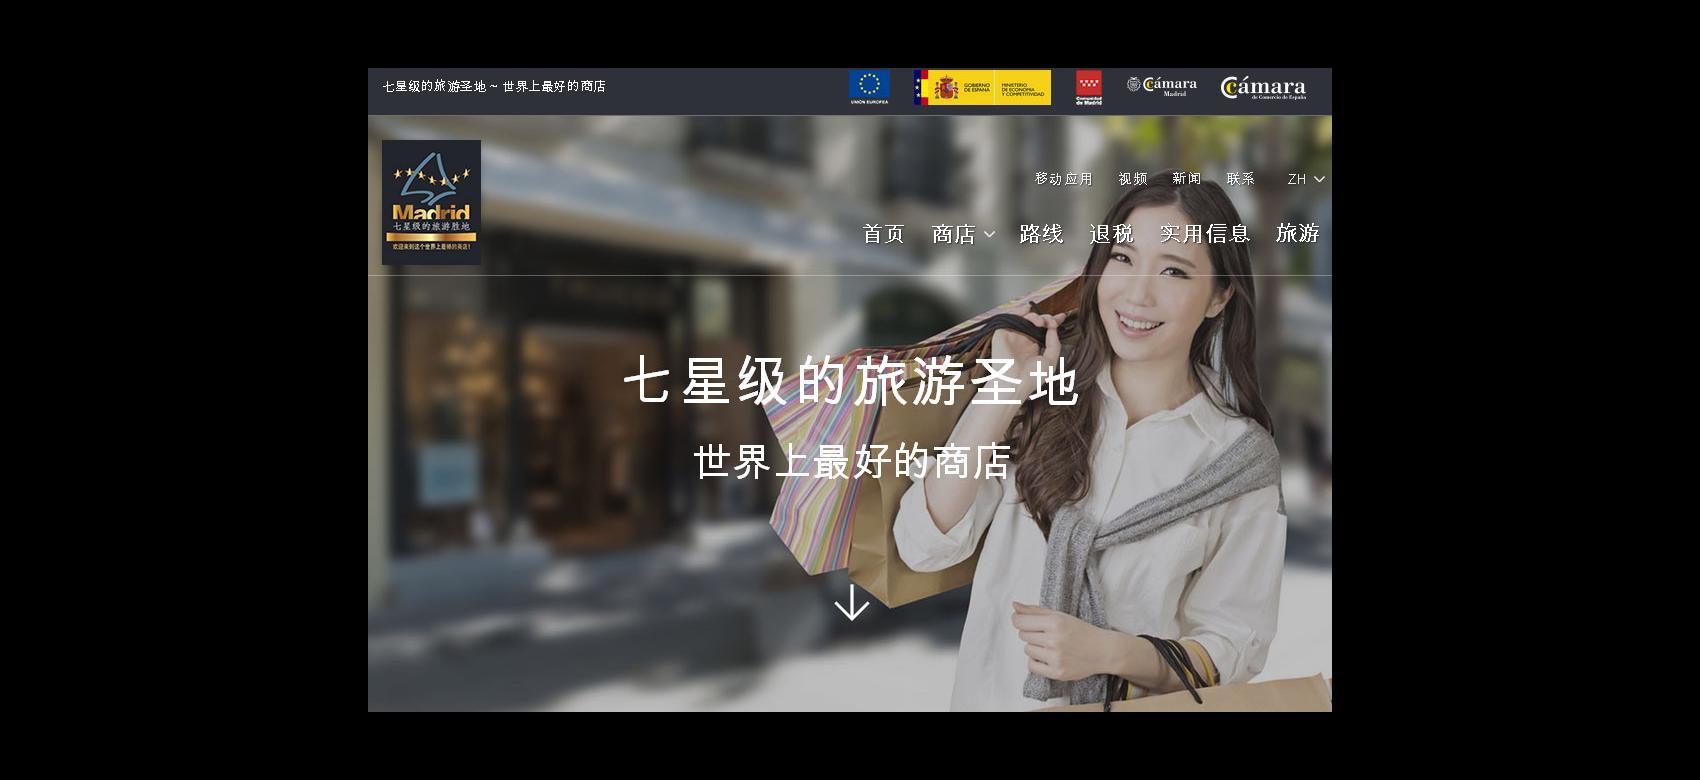 Web Promocional (versión en Chino)